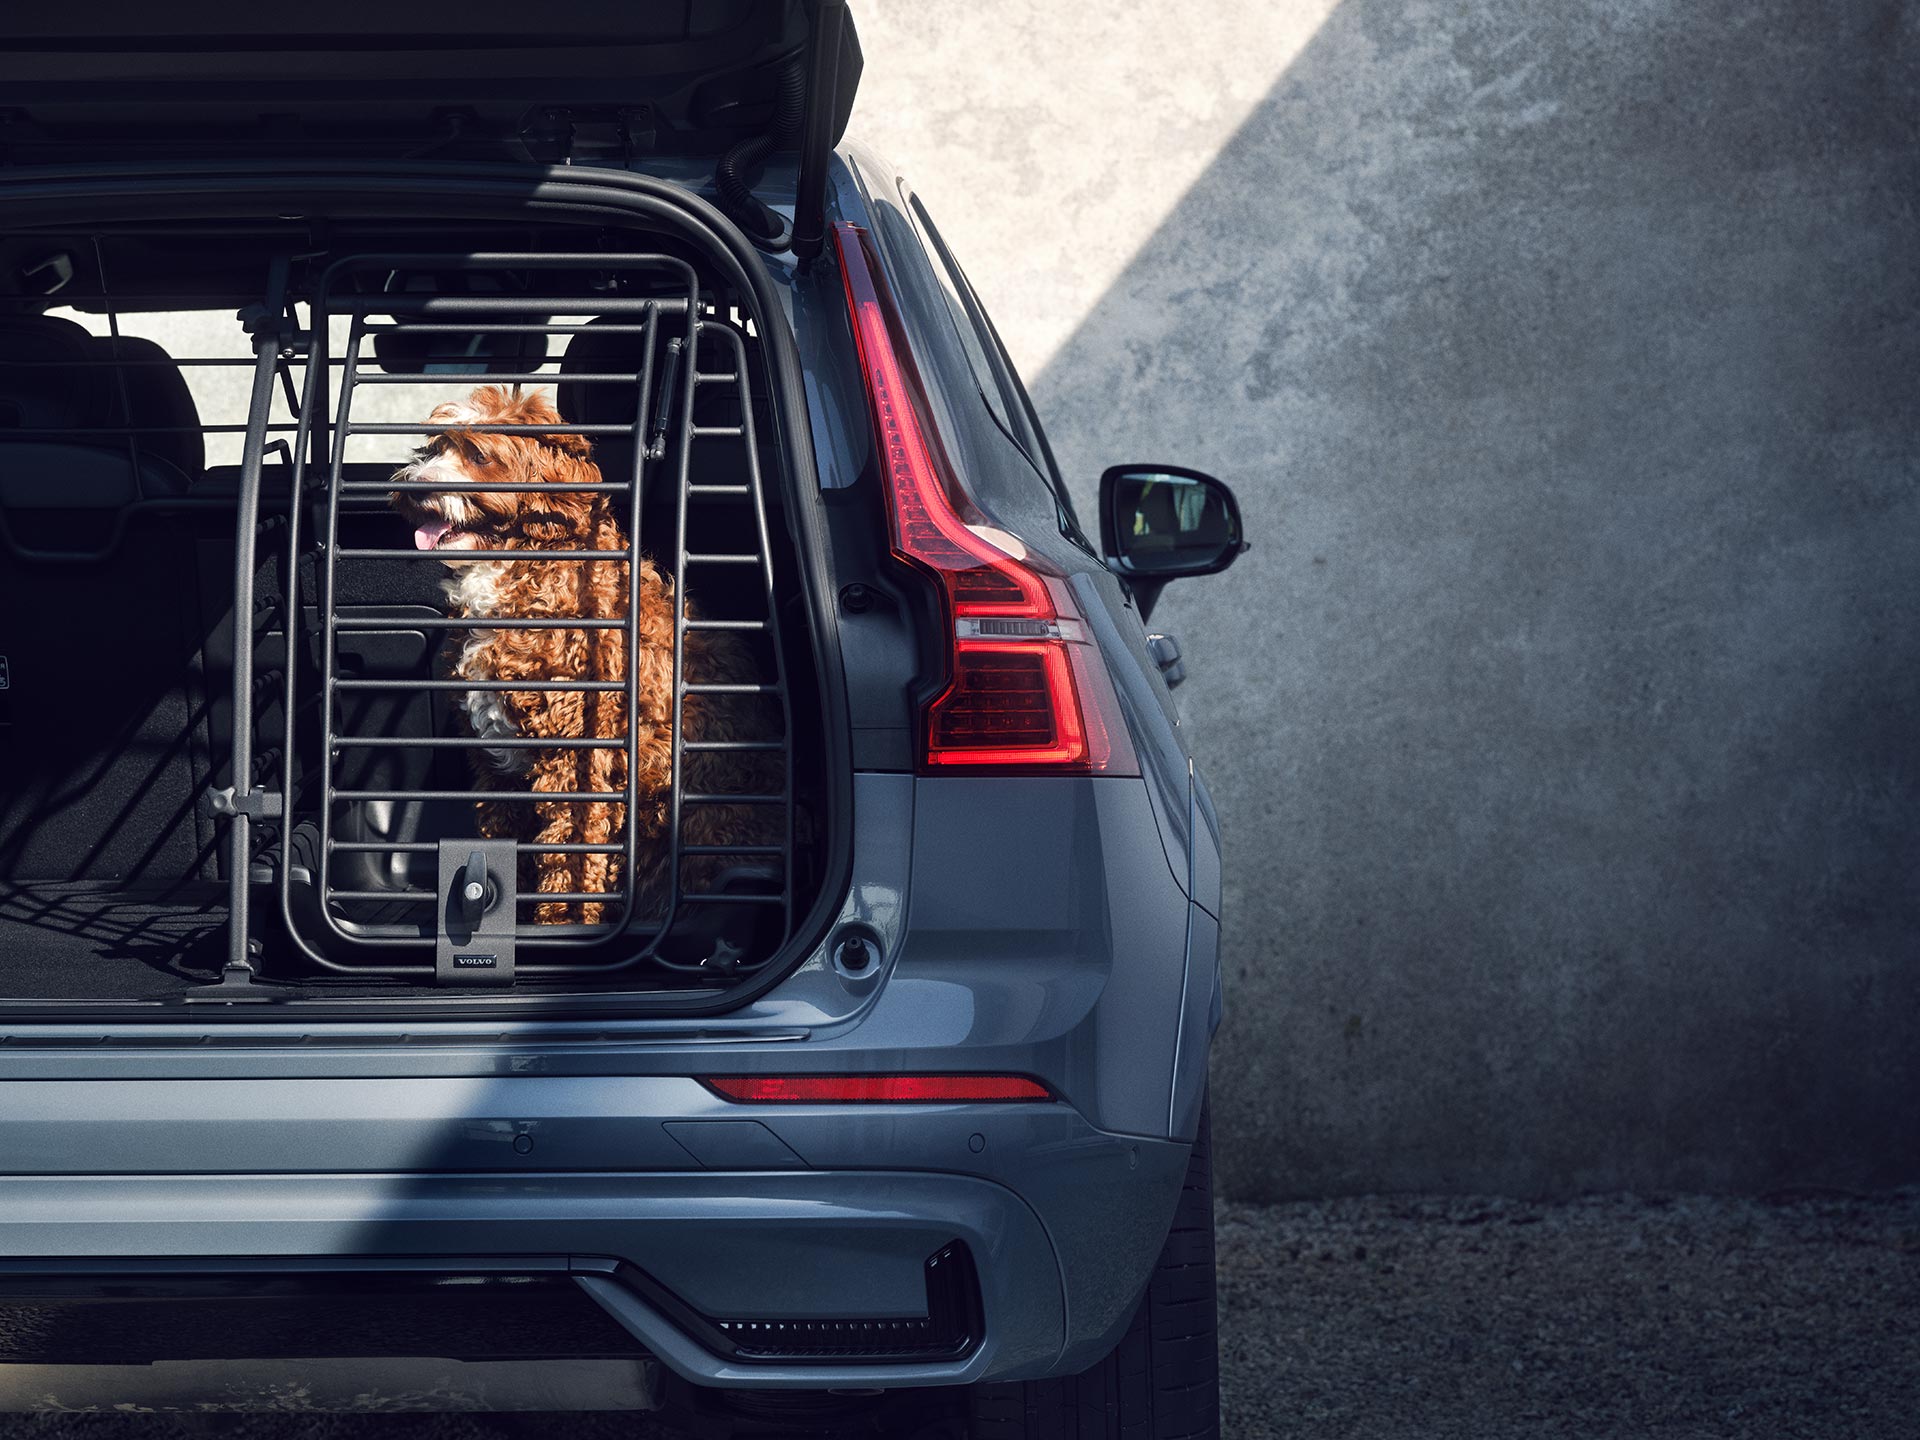 Kuparinvärinen koira istuu turvallisessa koirahäkissä, joka on suunniteltu erityisesti Volvo-autoissa matkustavien lemmikkien turvallisuutta ja mukavuutta ajatellen.